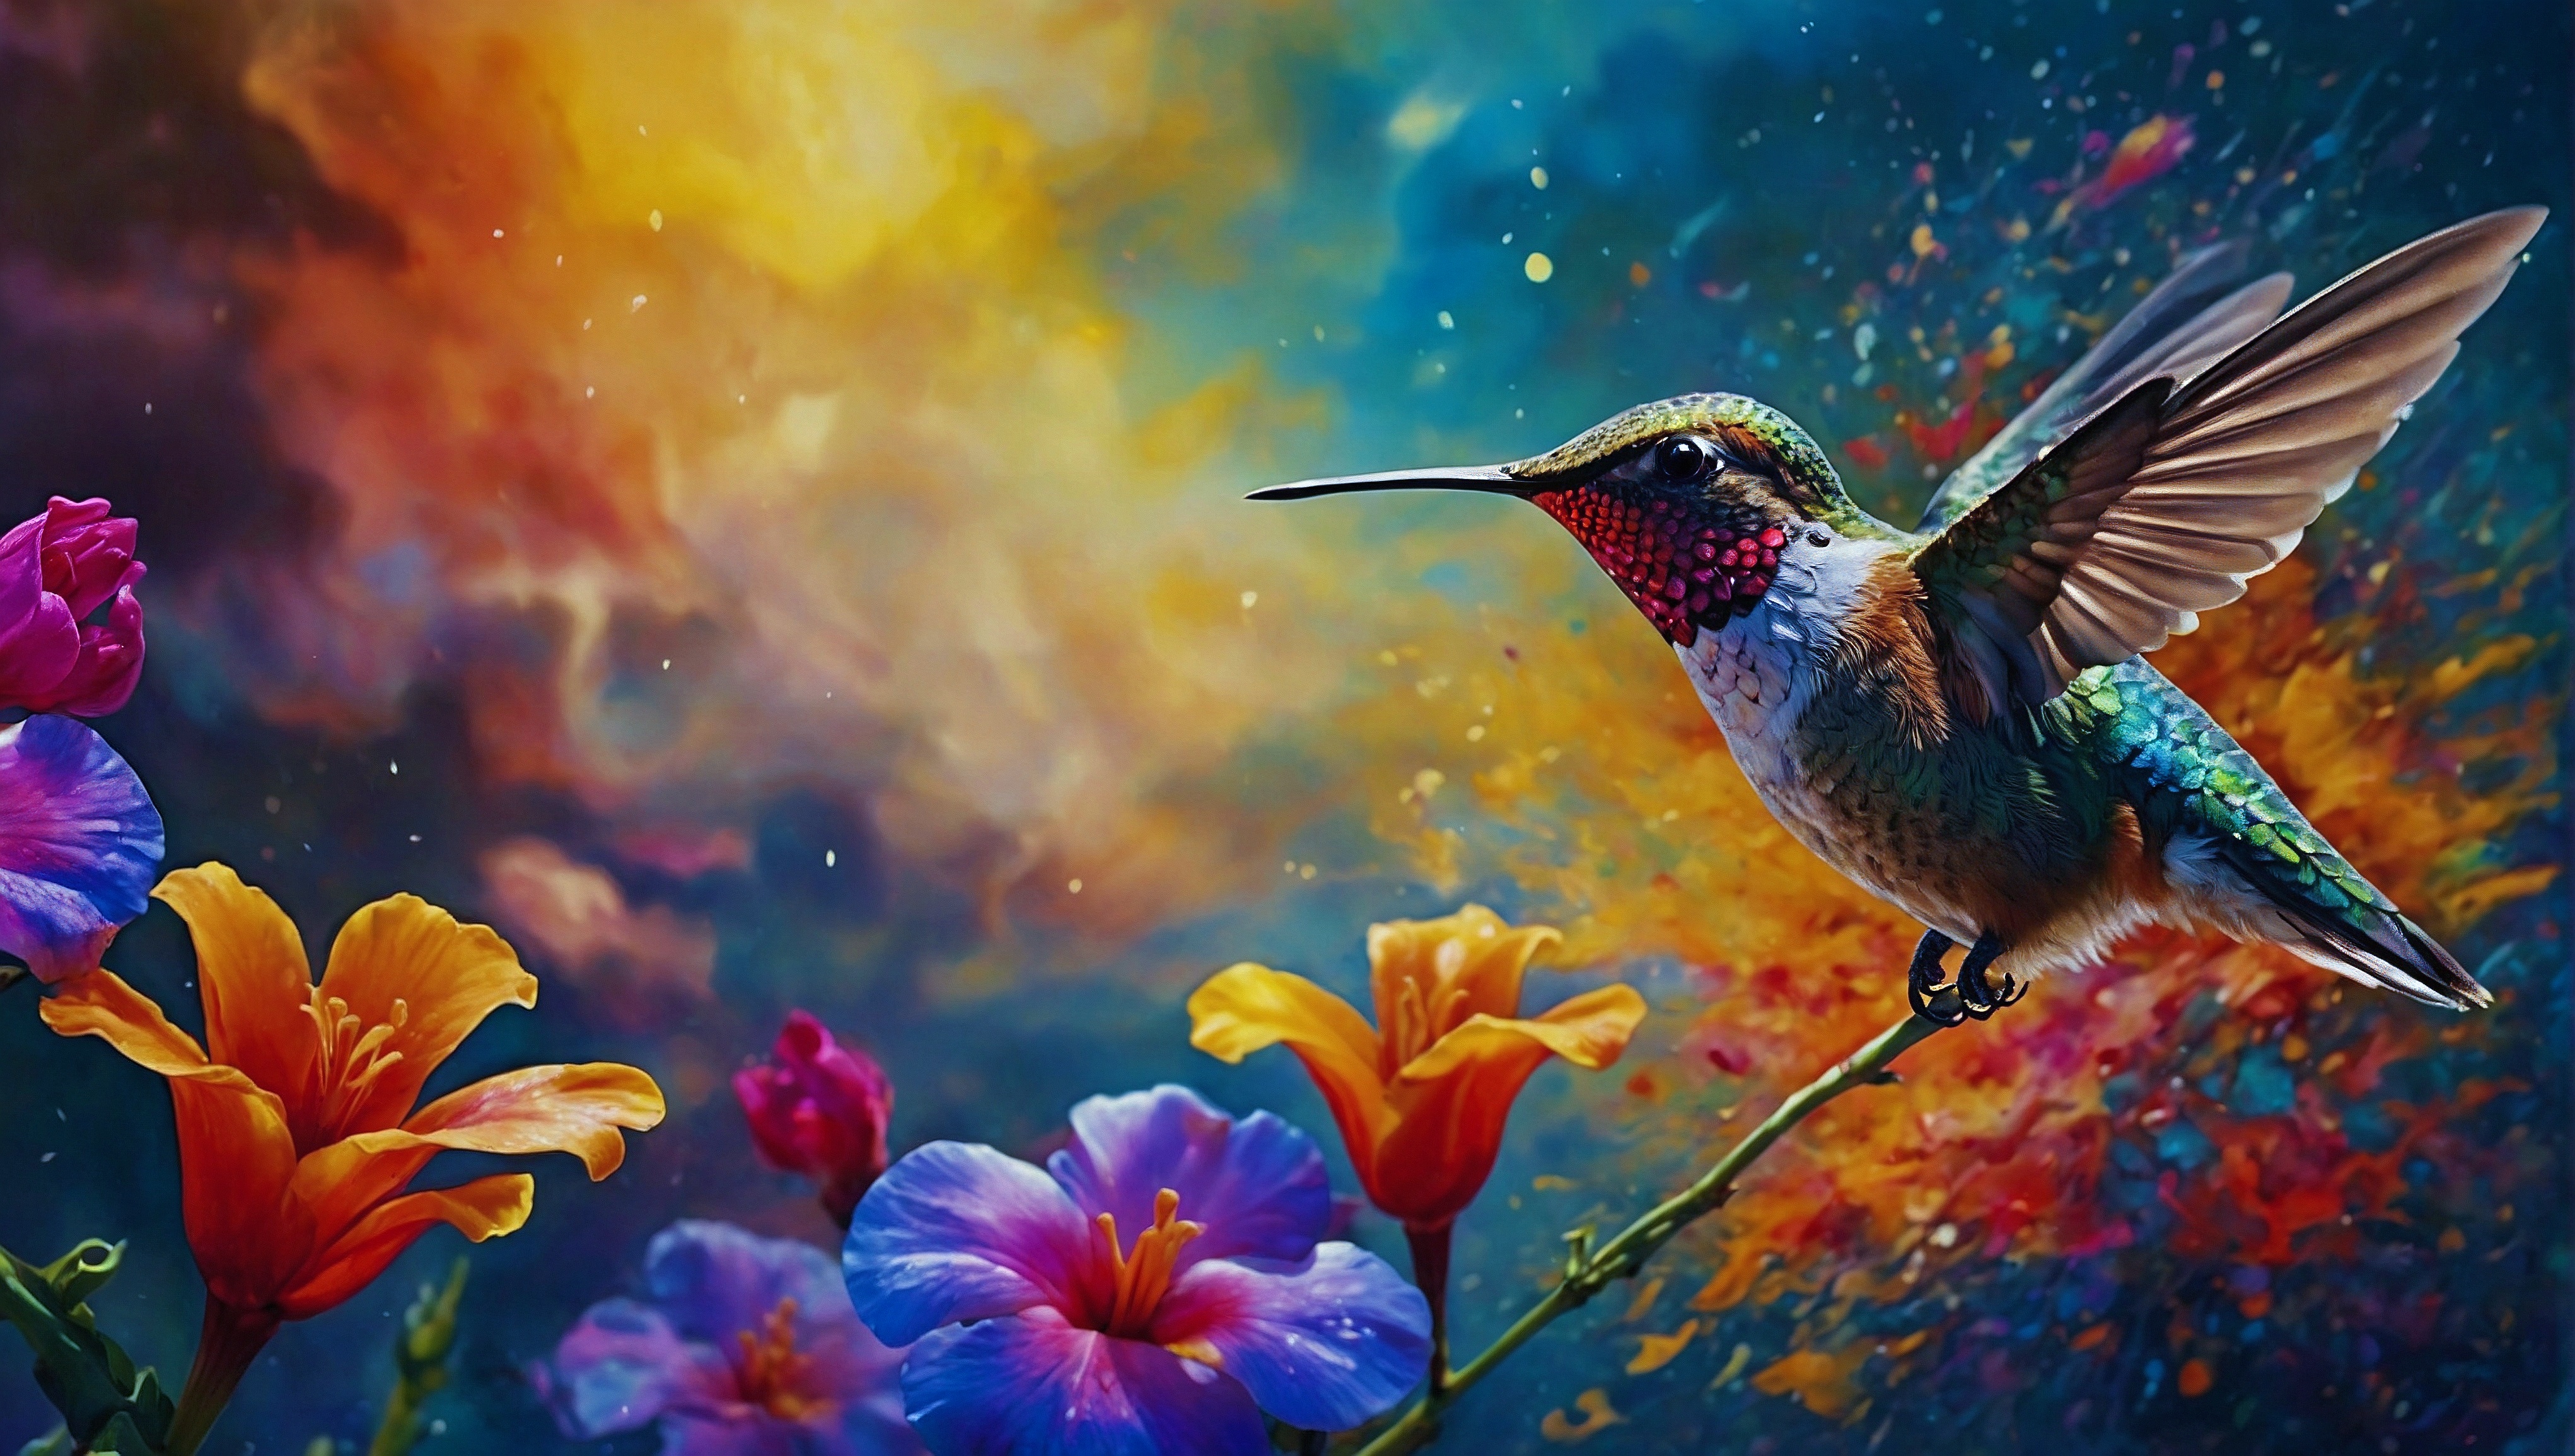 Бесплатное фото Картина с изображением колибри на разноцветных стеблях цветов